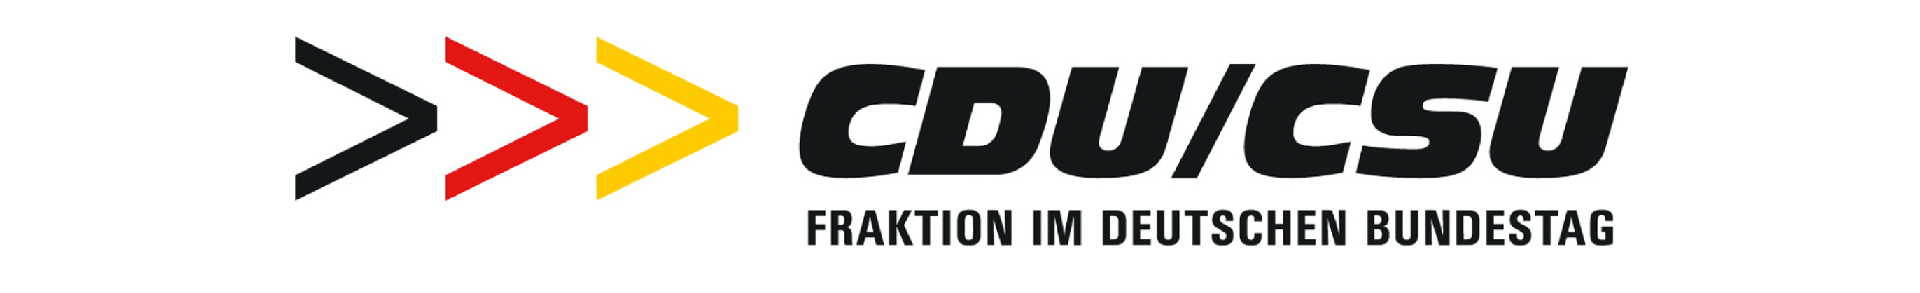 Altes Logo der CDU/CSU-Fraktion im Deutschen Bundestag